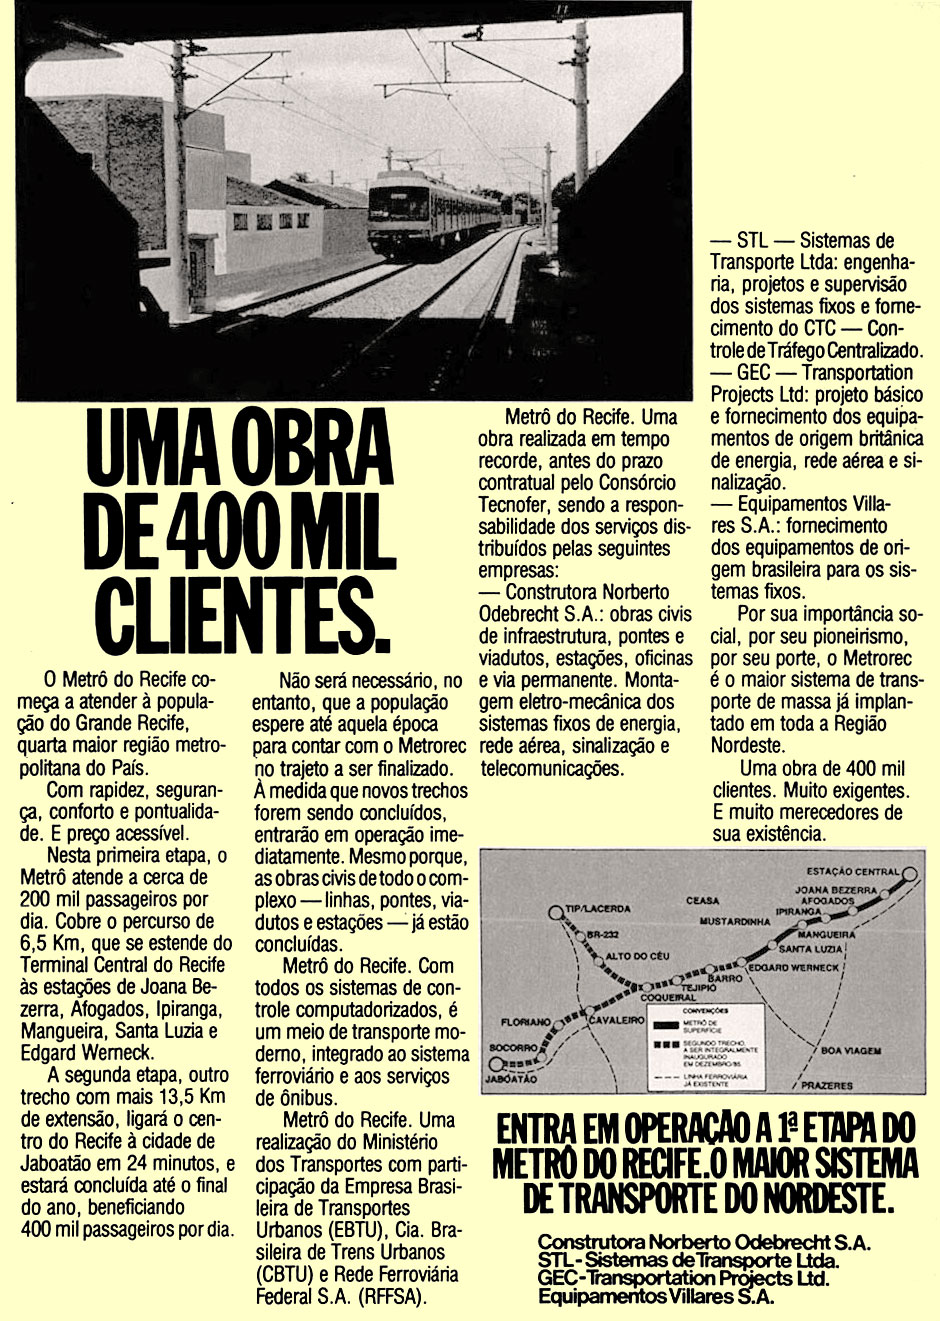 Anúncio do início da operação ferroviária do Trem Metropolitano do Recife em 1985